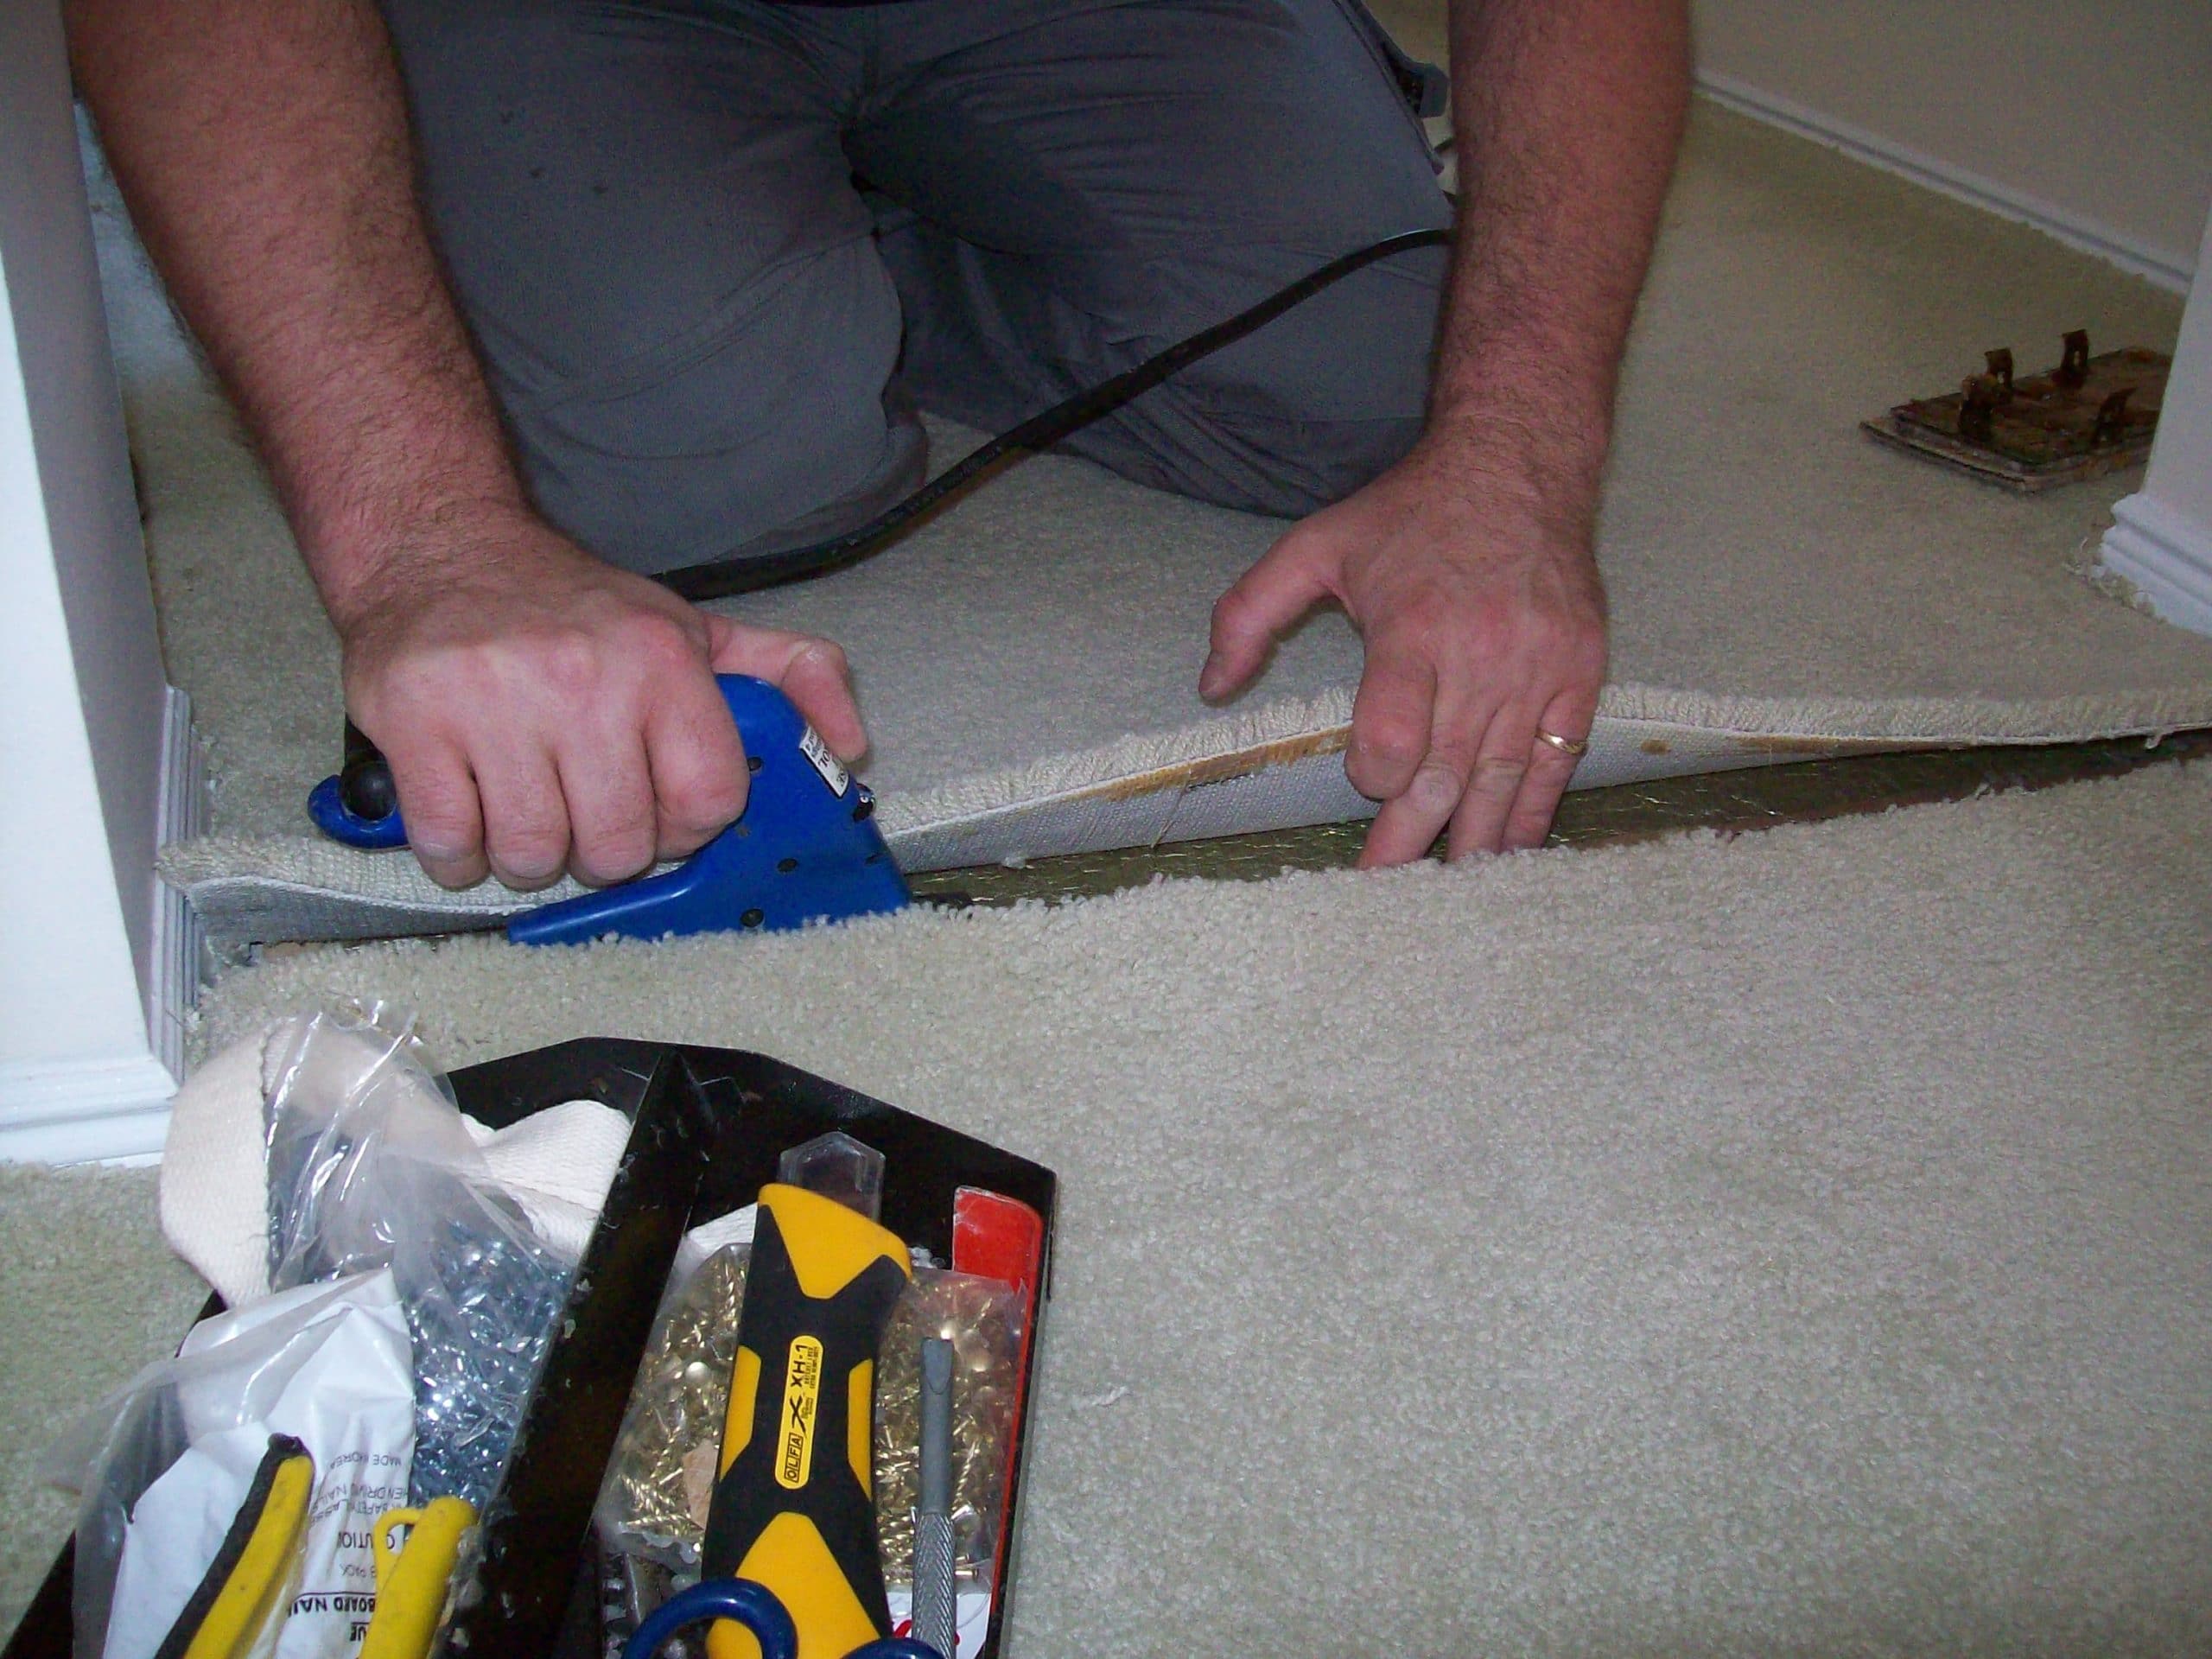 Carpet Binding Tape - Fix Frays with Smoke Carpet Edging